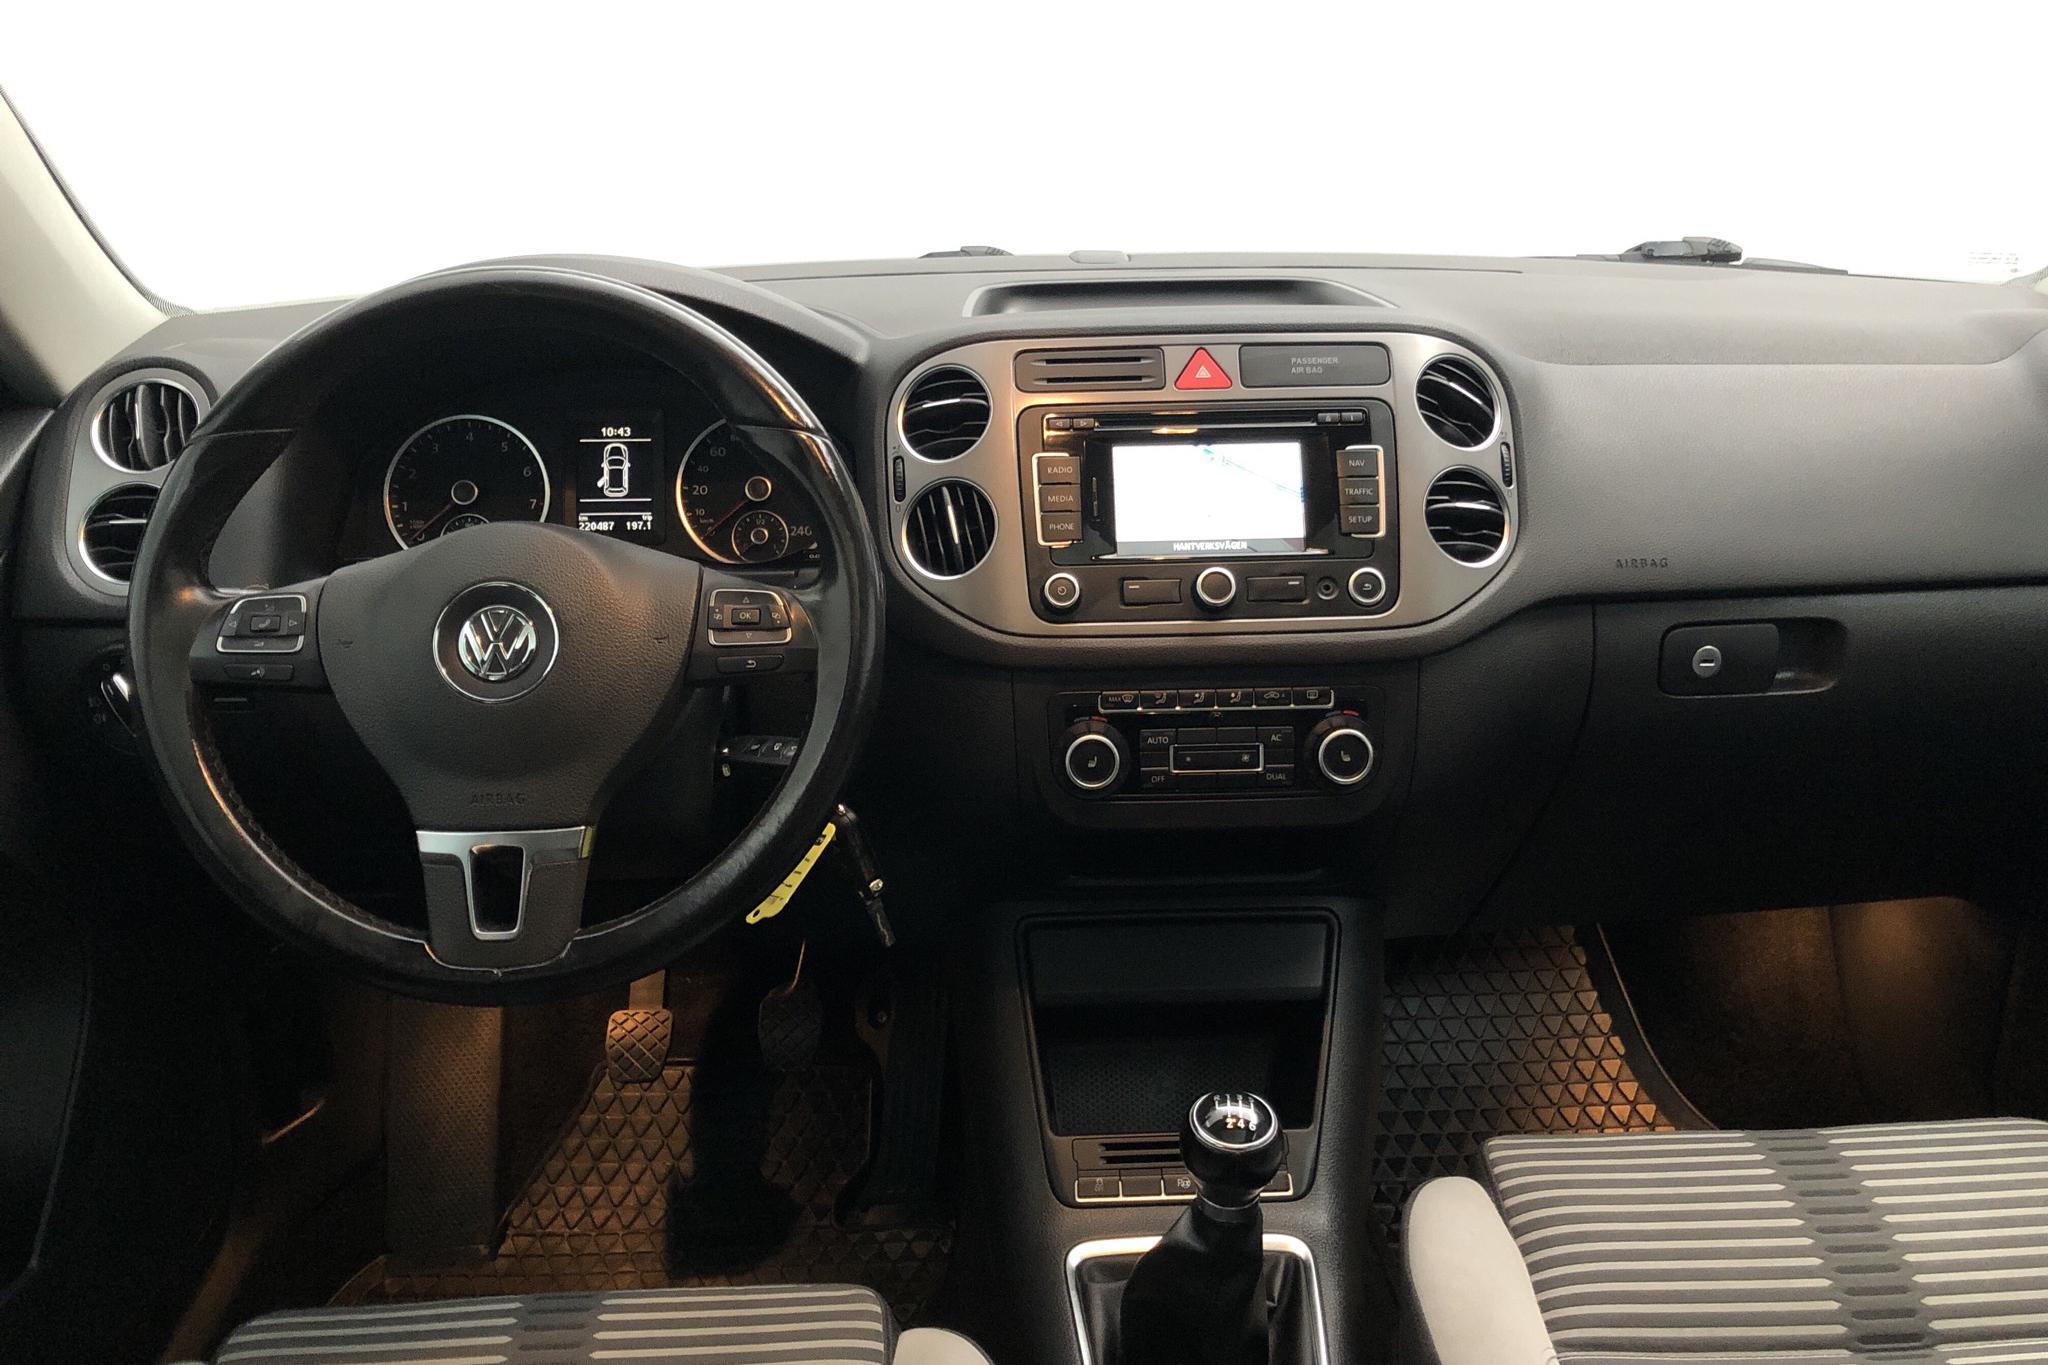 VW Tiguan 2.0 TFSI (170hk) - 22 048 mil - Manuell - svart - 2011